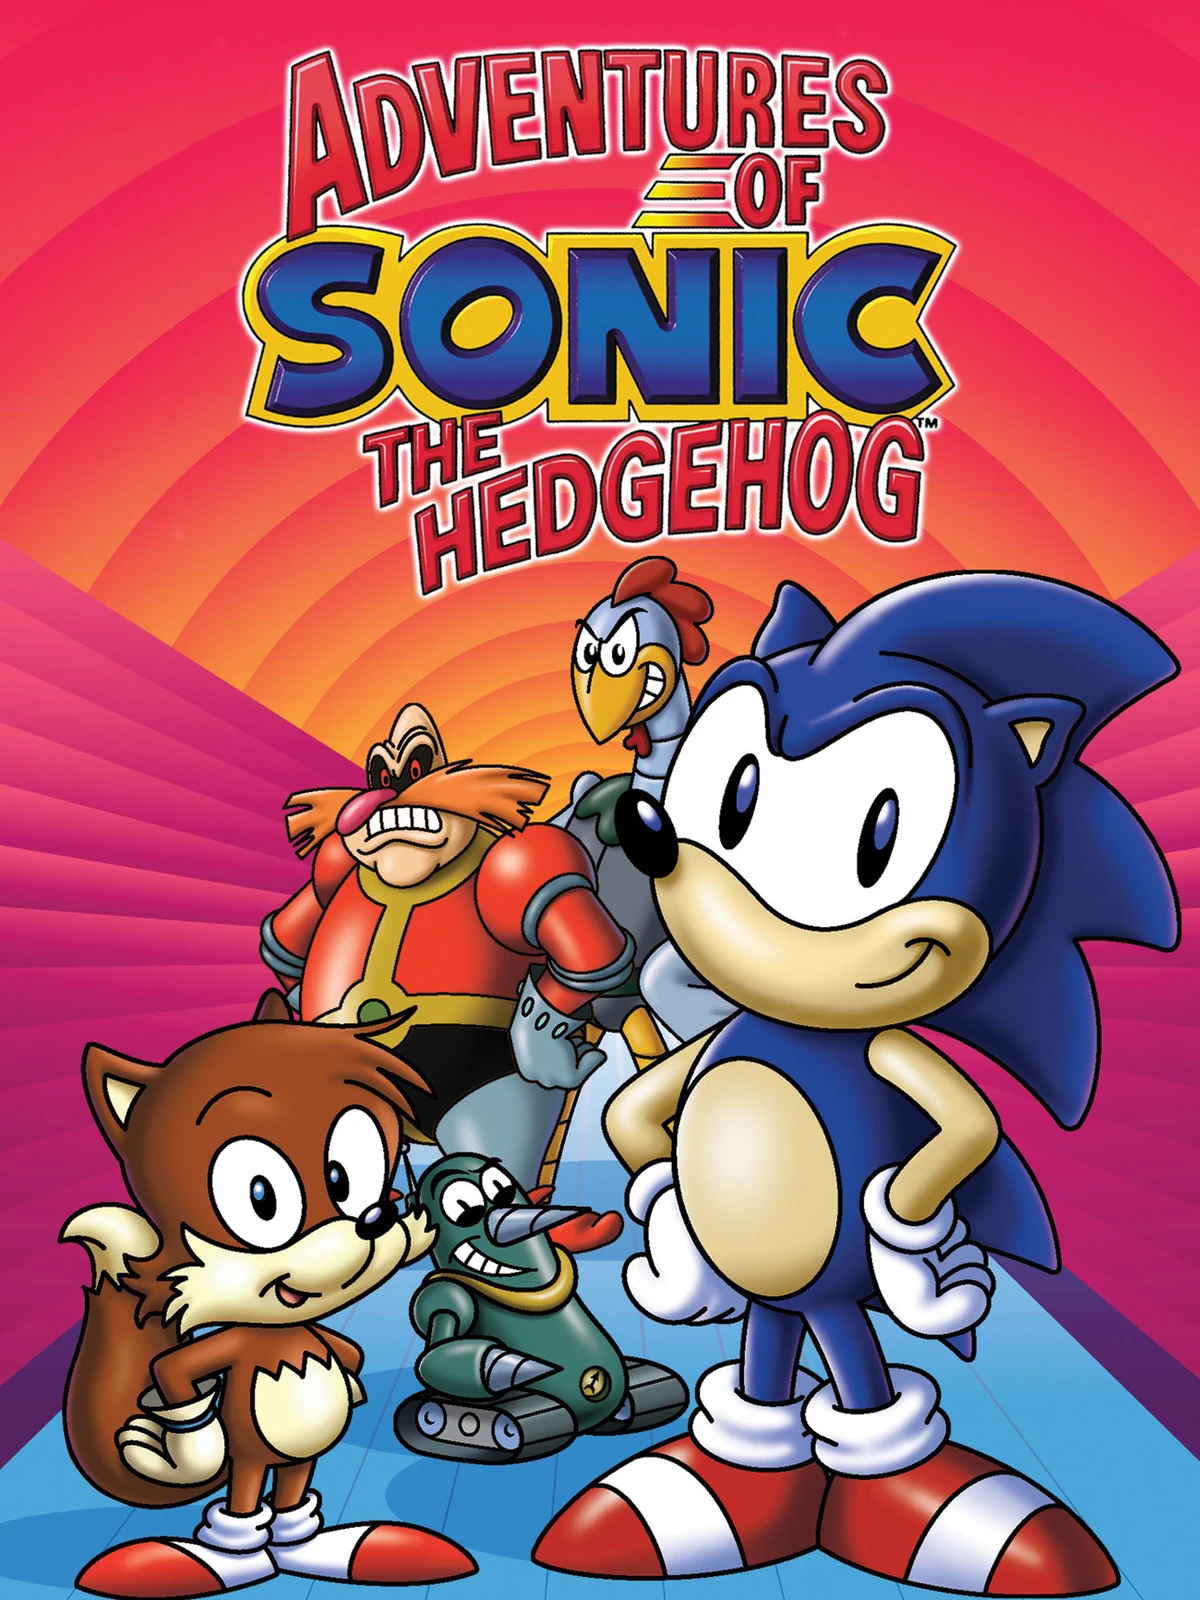 Maratona Sonic: Sonic the Hedgehog 4: Episode I (Mobile / Wii